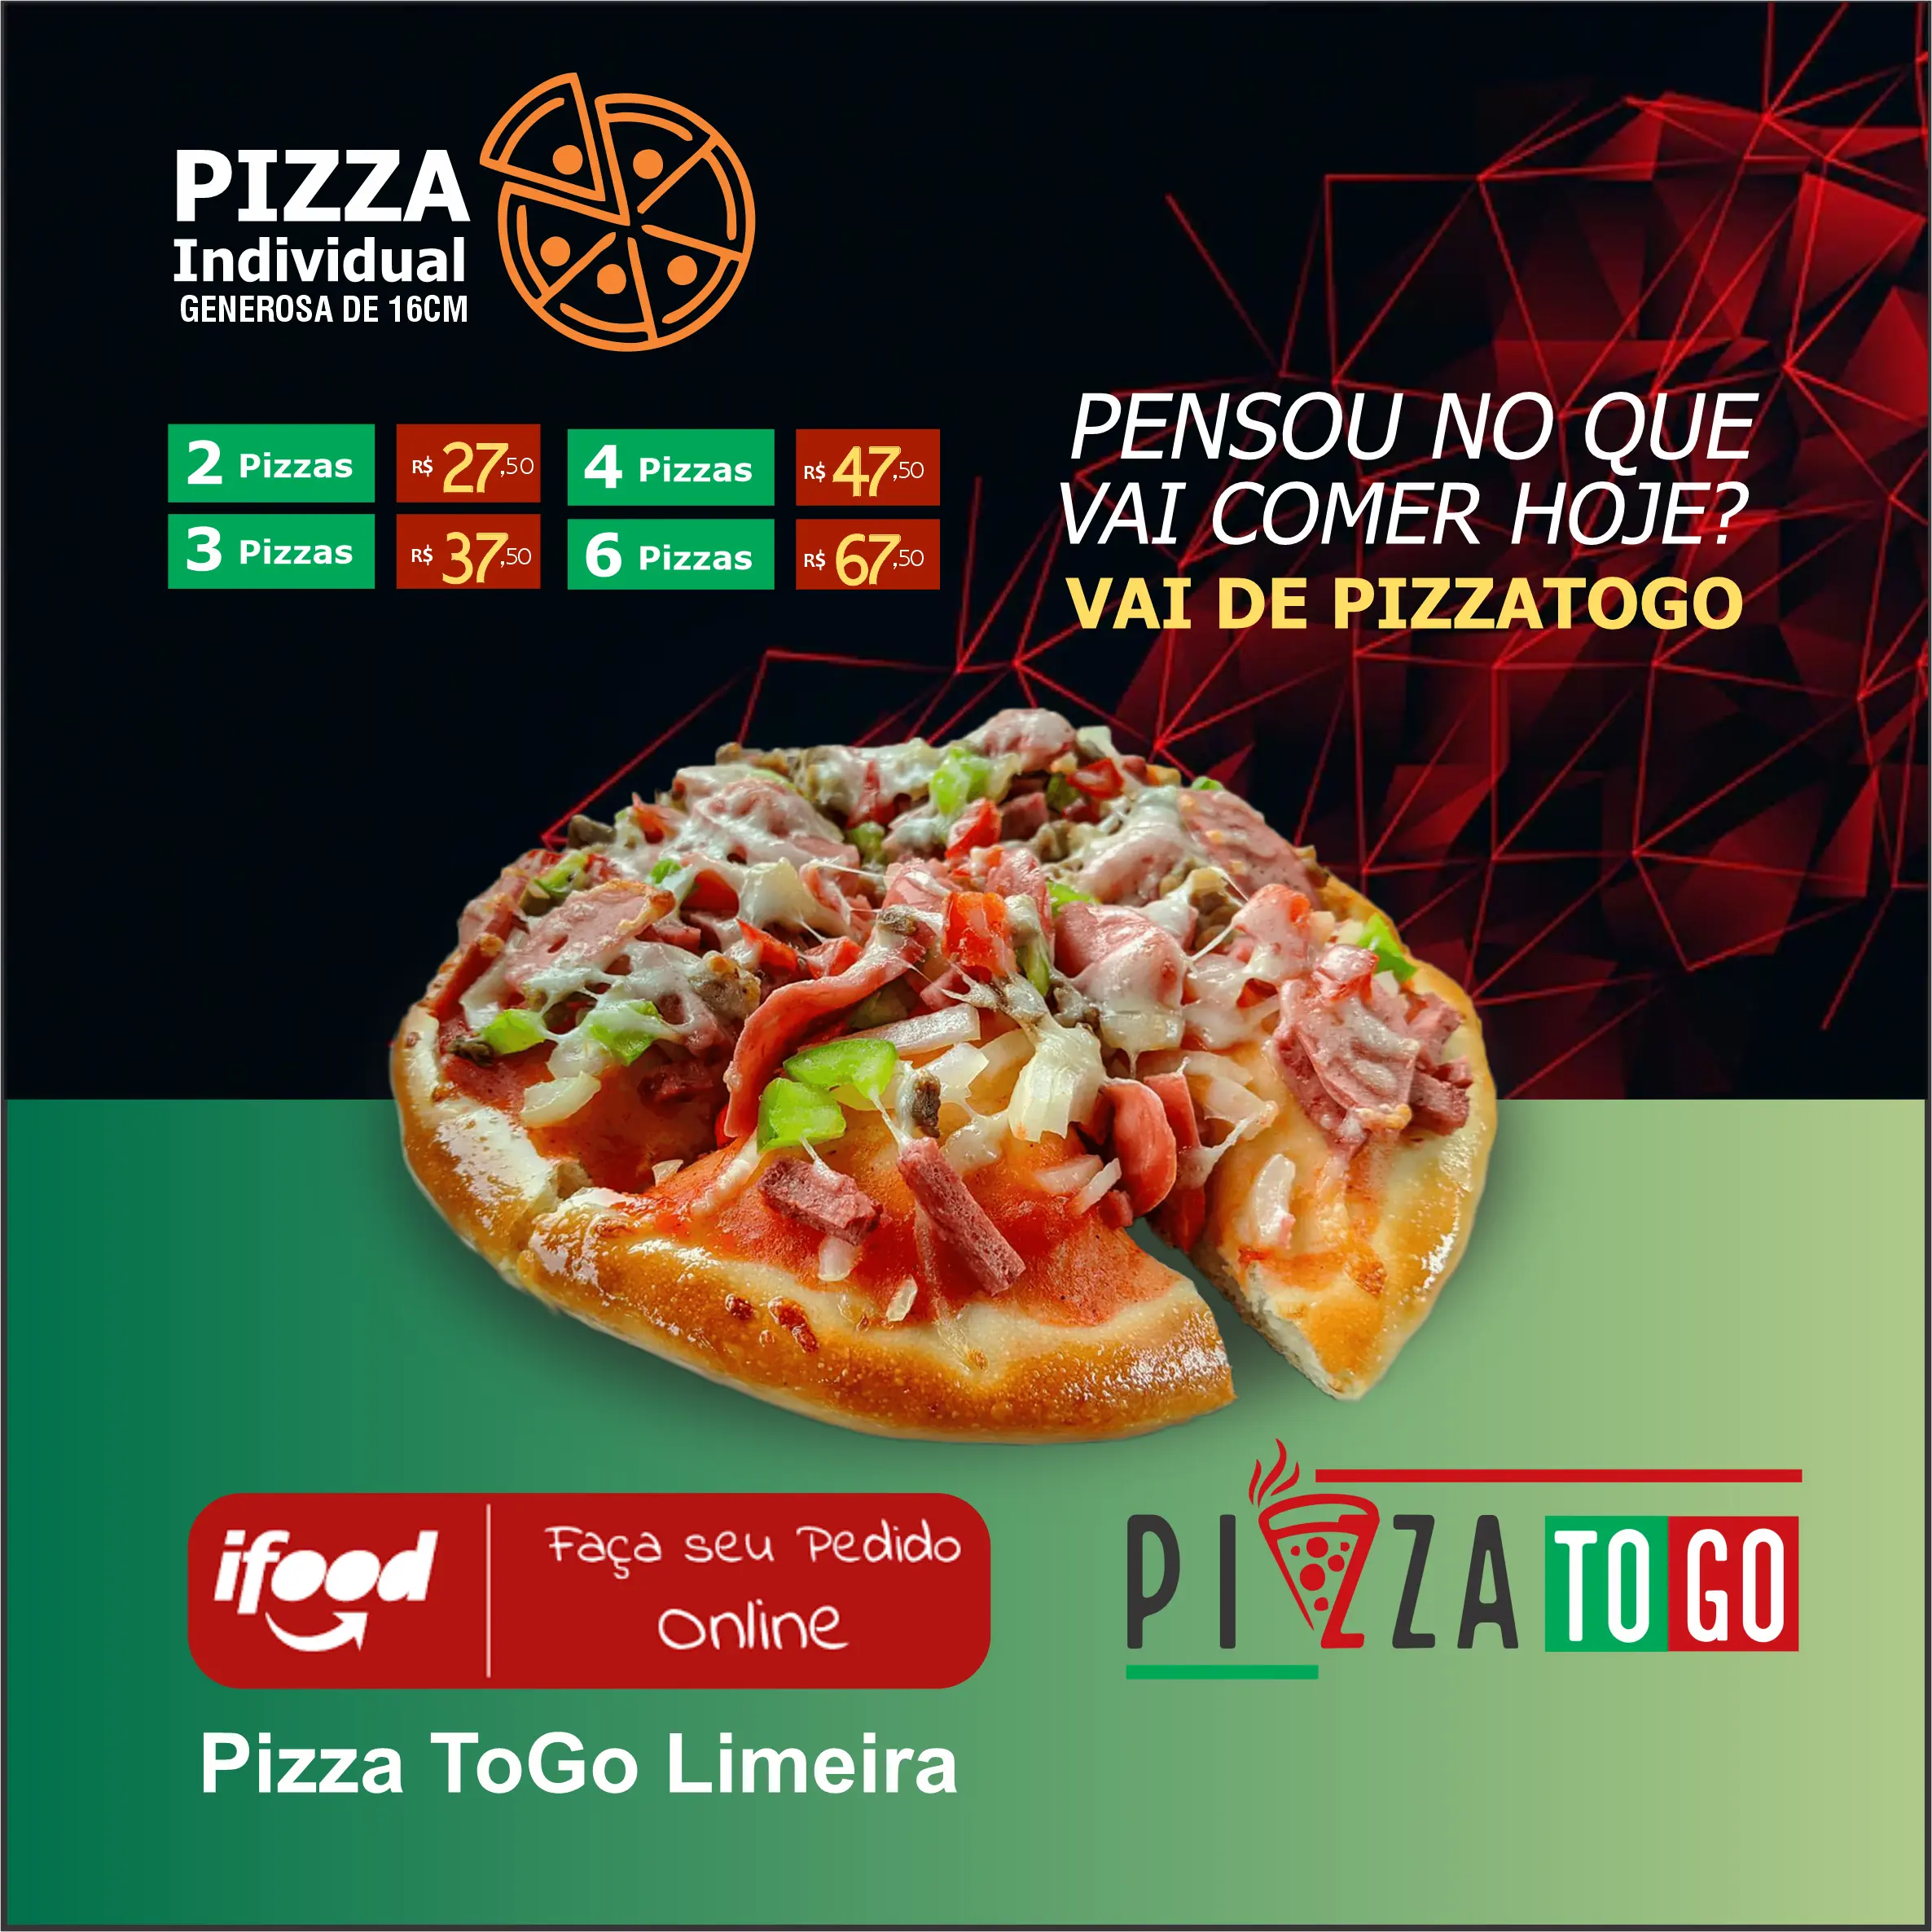 
Propaganda para Ifood sobre Pizza Brotinho mini pizza de pizzaria



